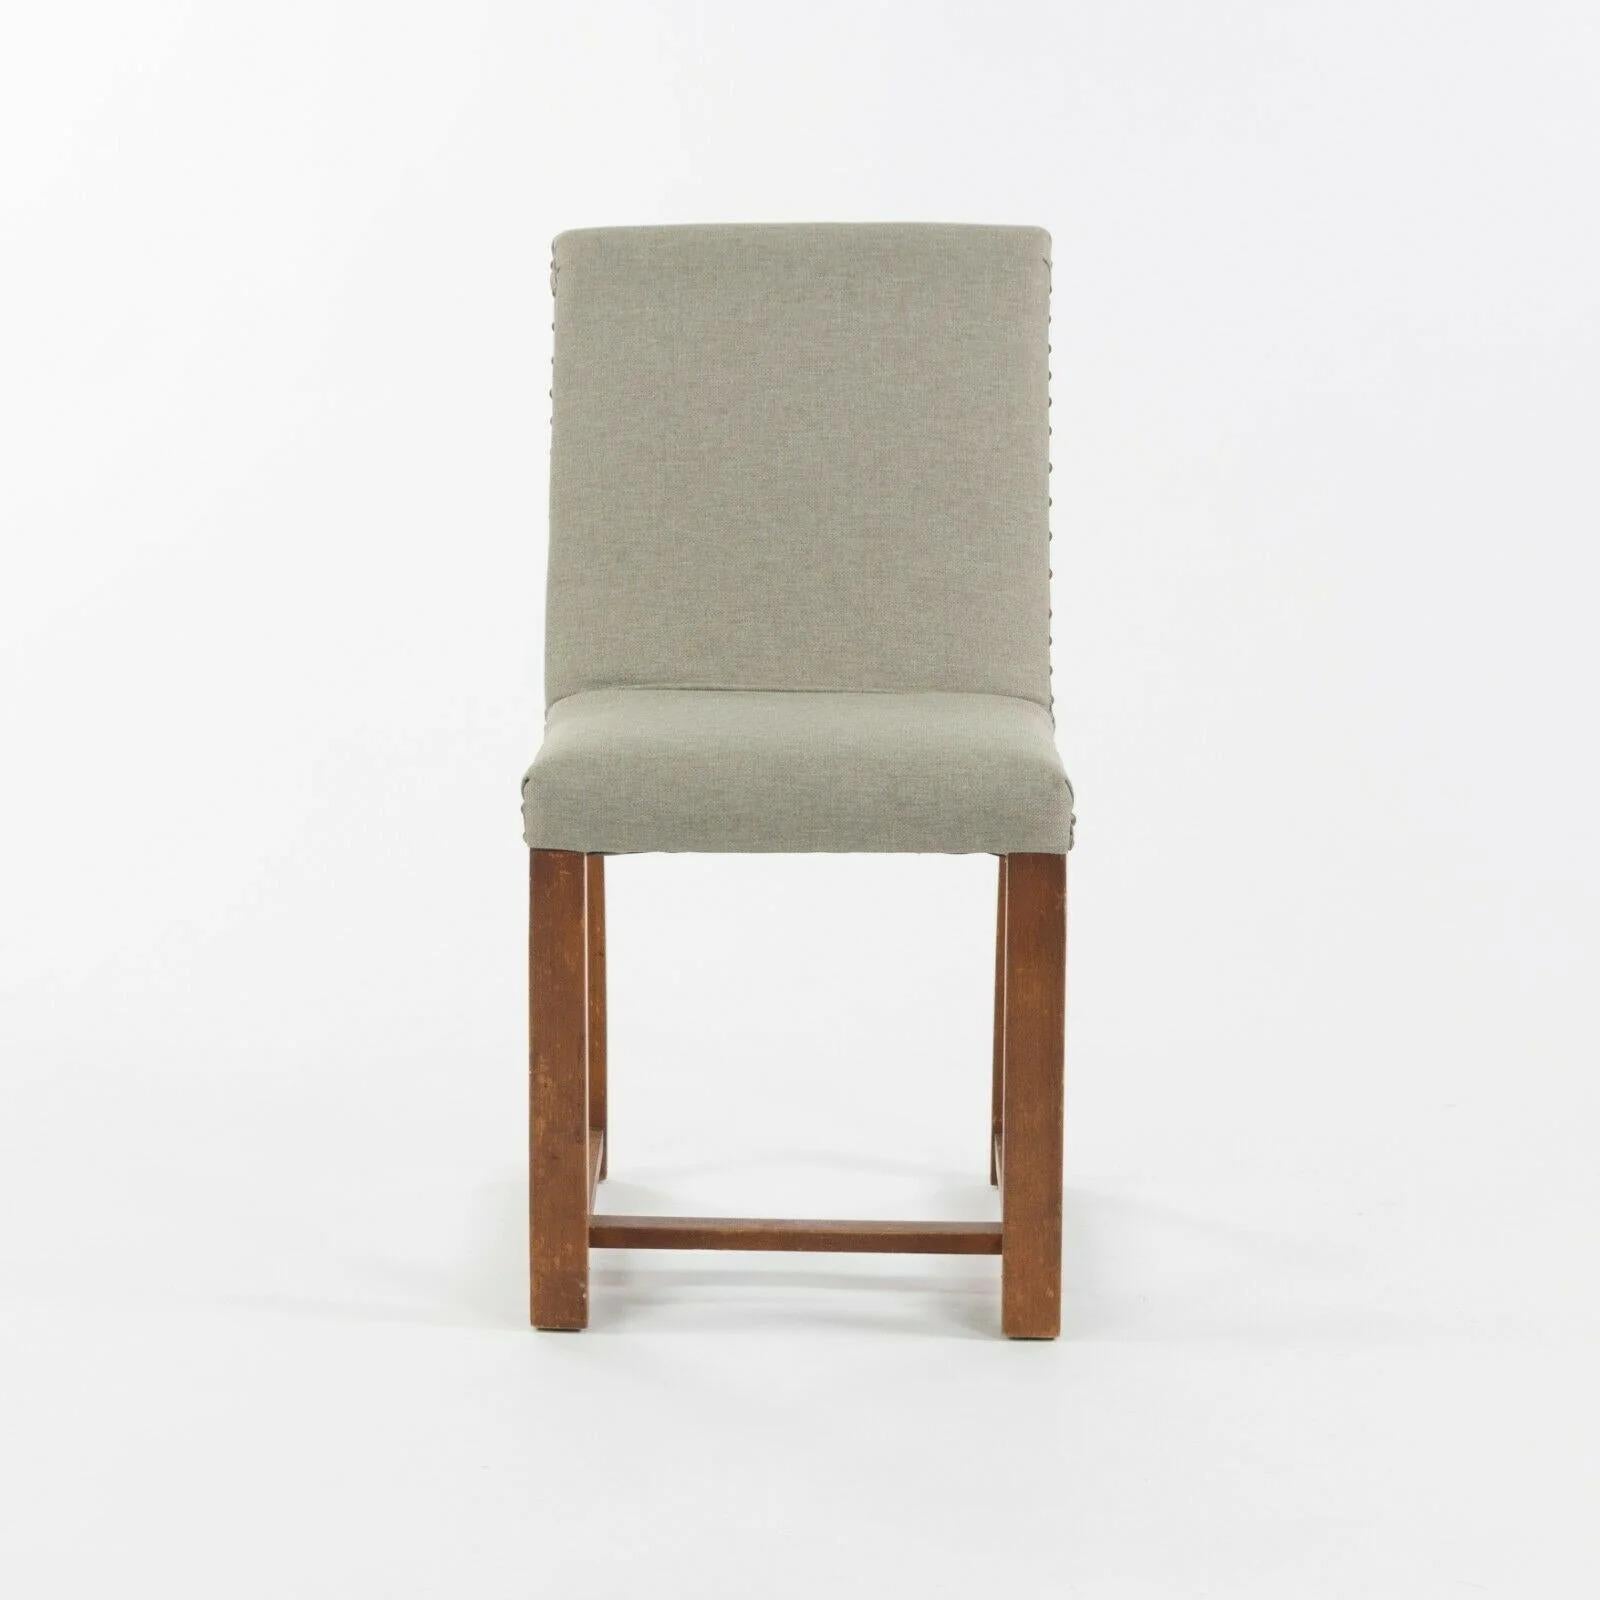 Nous proposons à la vente un ensemble de quatre chaises de salle à manger, conçues par Gilbert Rohde et produites par Heywood Wakefield. Gilbert Rohde a été un designer extrêmement influent jusqu'à sa mort en 1944. Il a contribué à conseiller et à